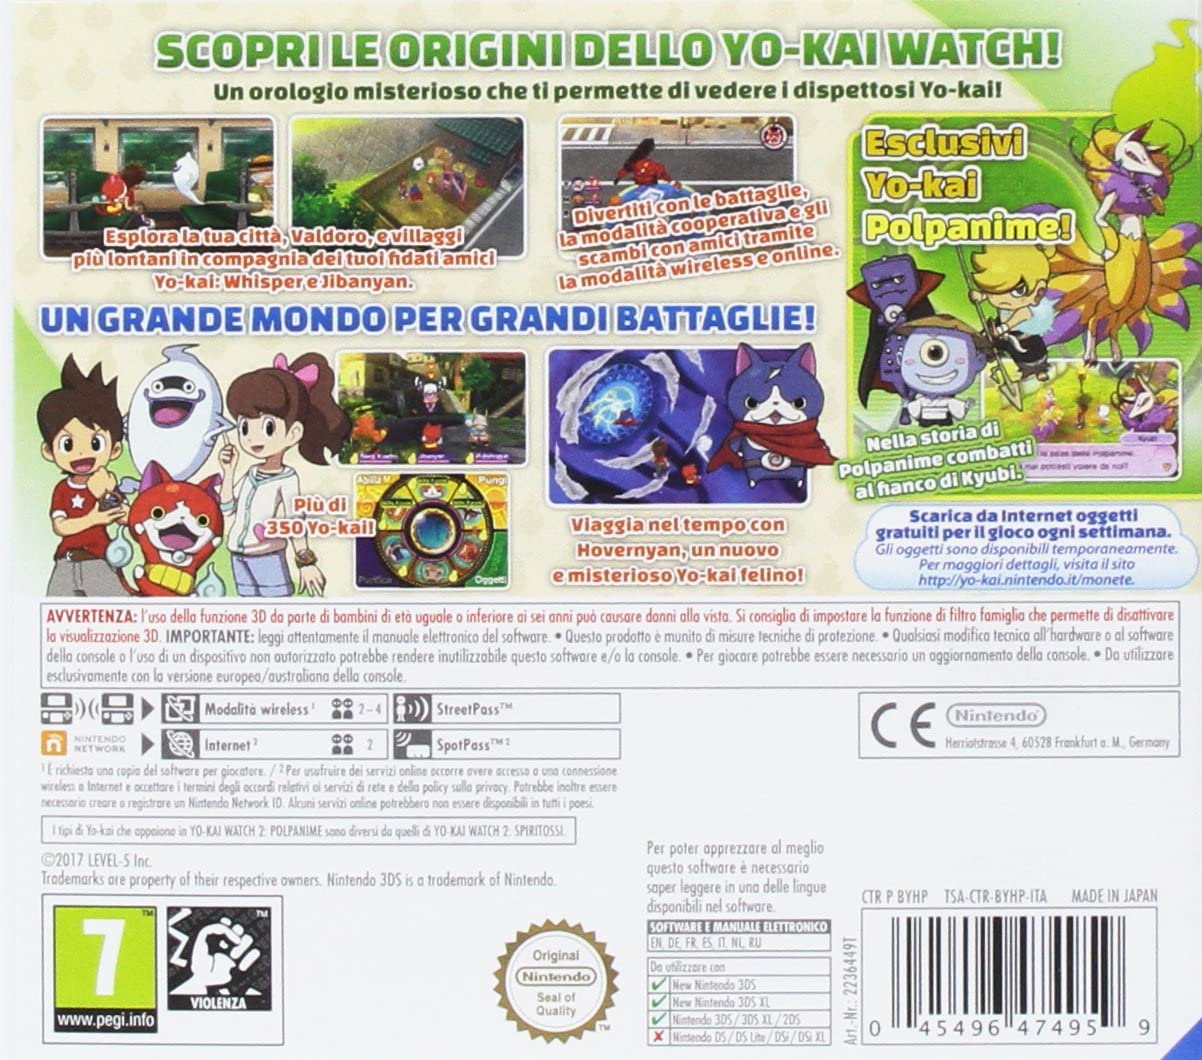 3DS Yo-Kai Watch 2 Polpanime - Usato garantito